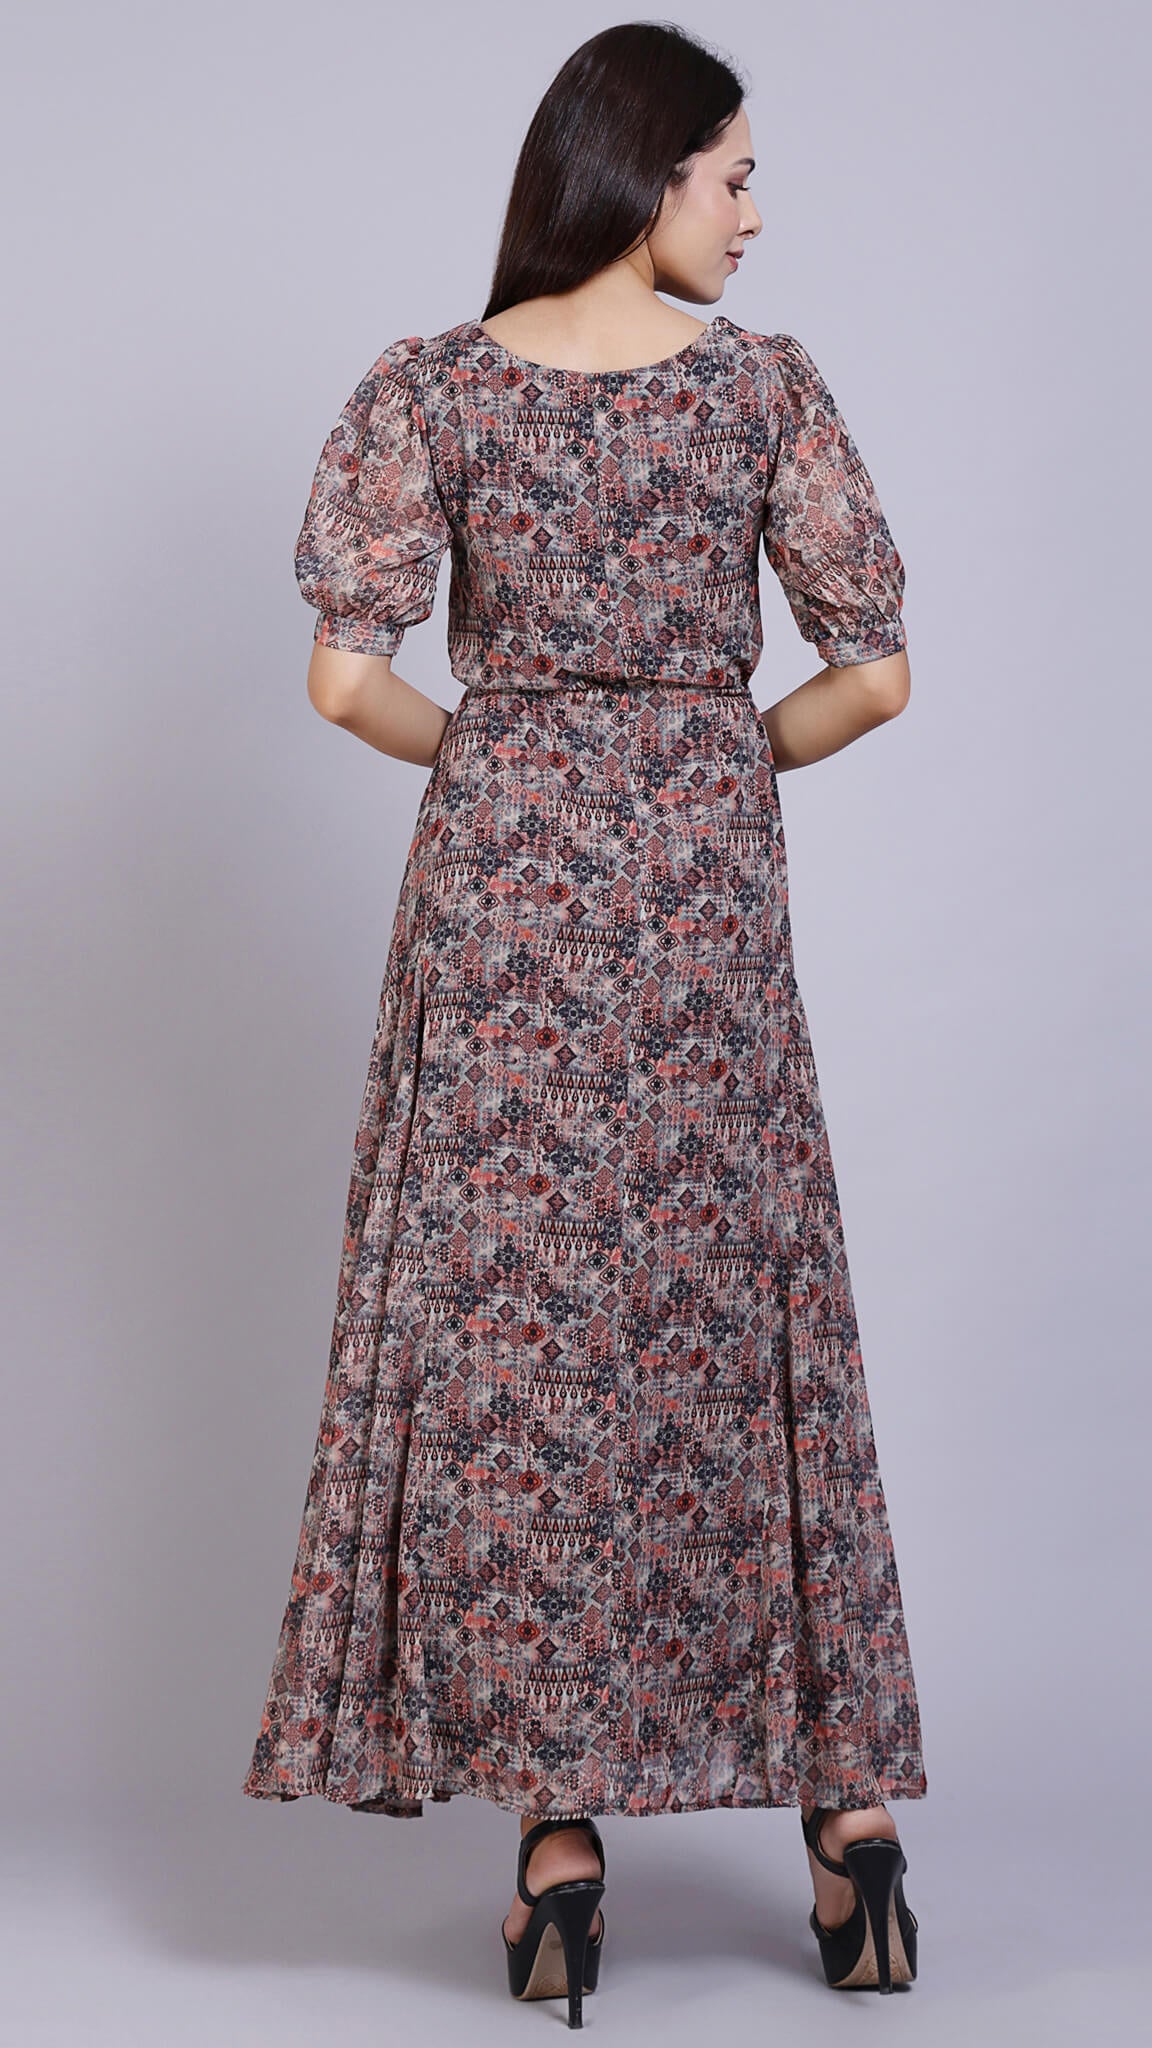 Buy Black Floral Print Long Dress Online - Label Ritu Kumar India Store View